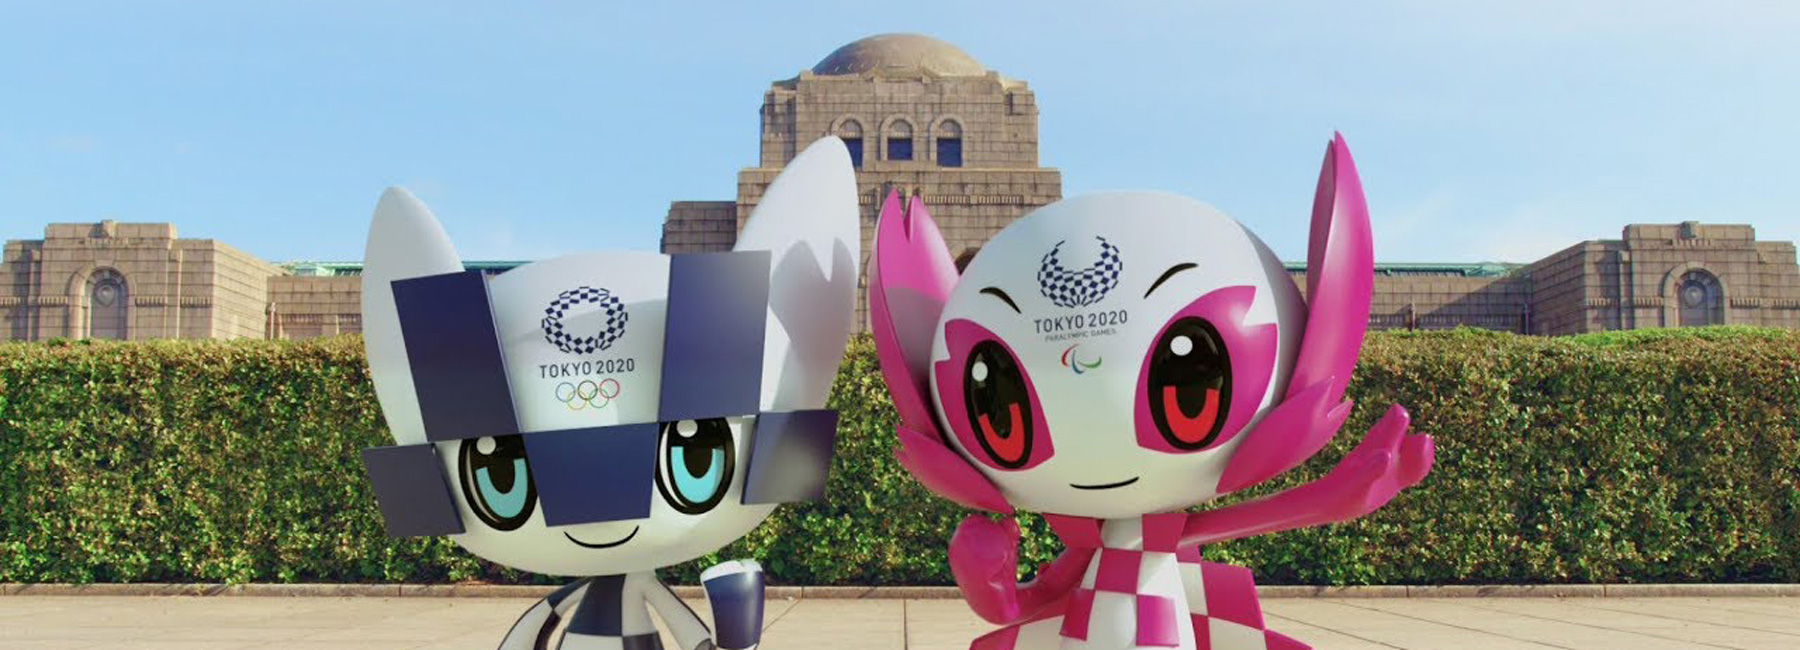 wacky superhero mascots for tokyo 2020 olympics are ...